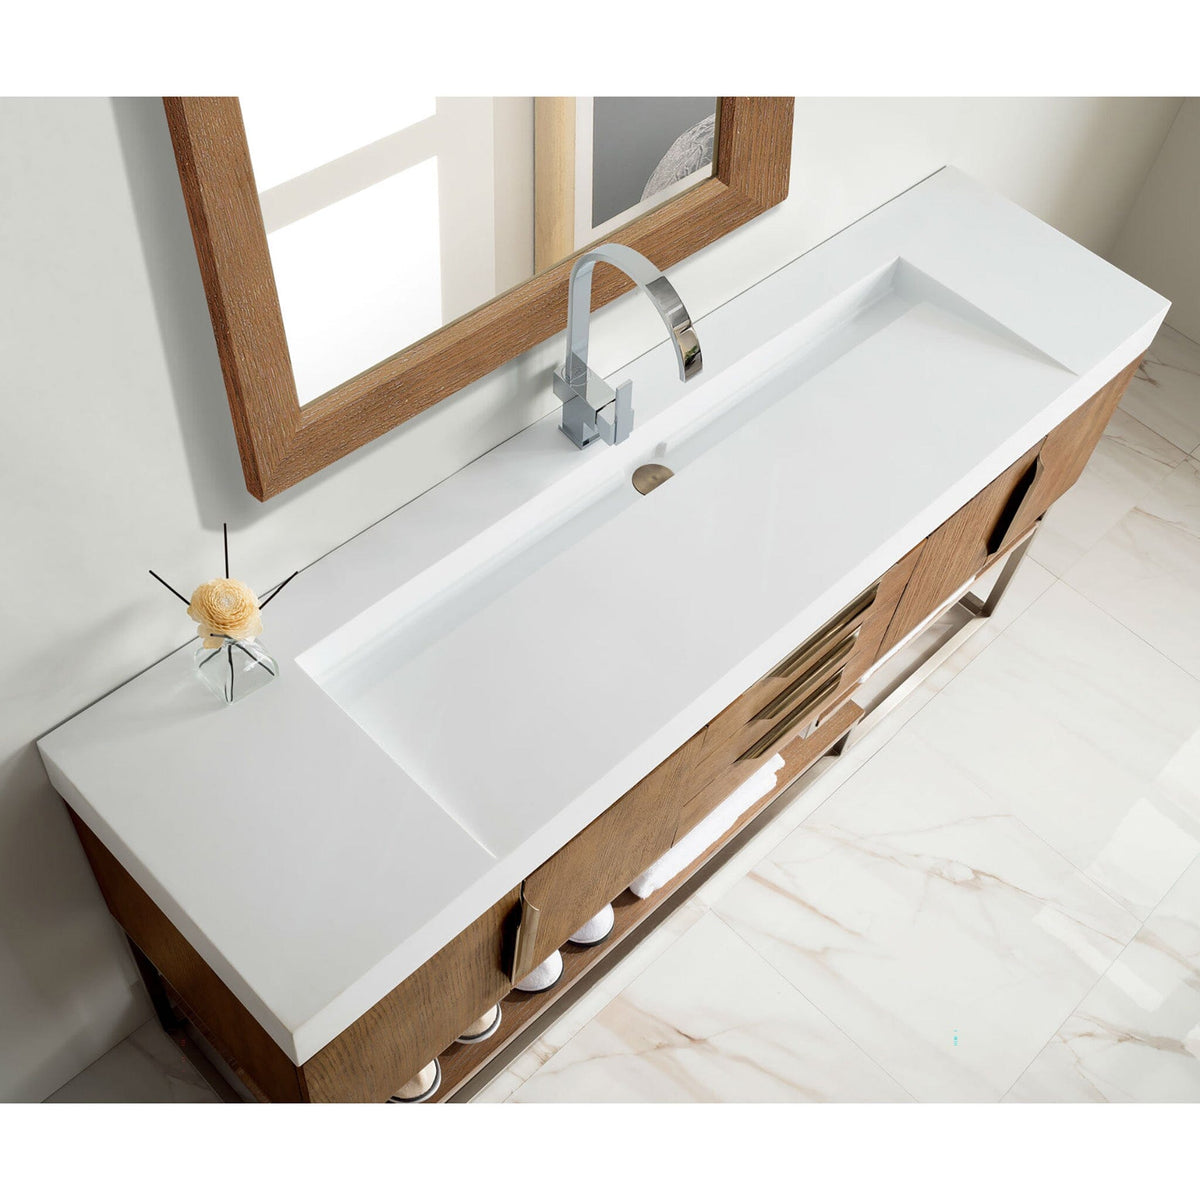 72" Columbia Single Bathroom Vanity, Latte Oak w/ Brushed Nickel Base - vanitiesdepot.com